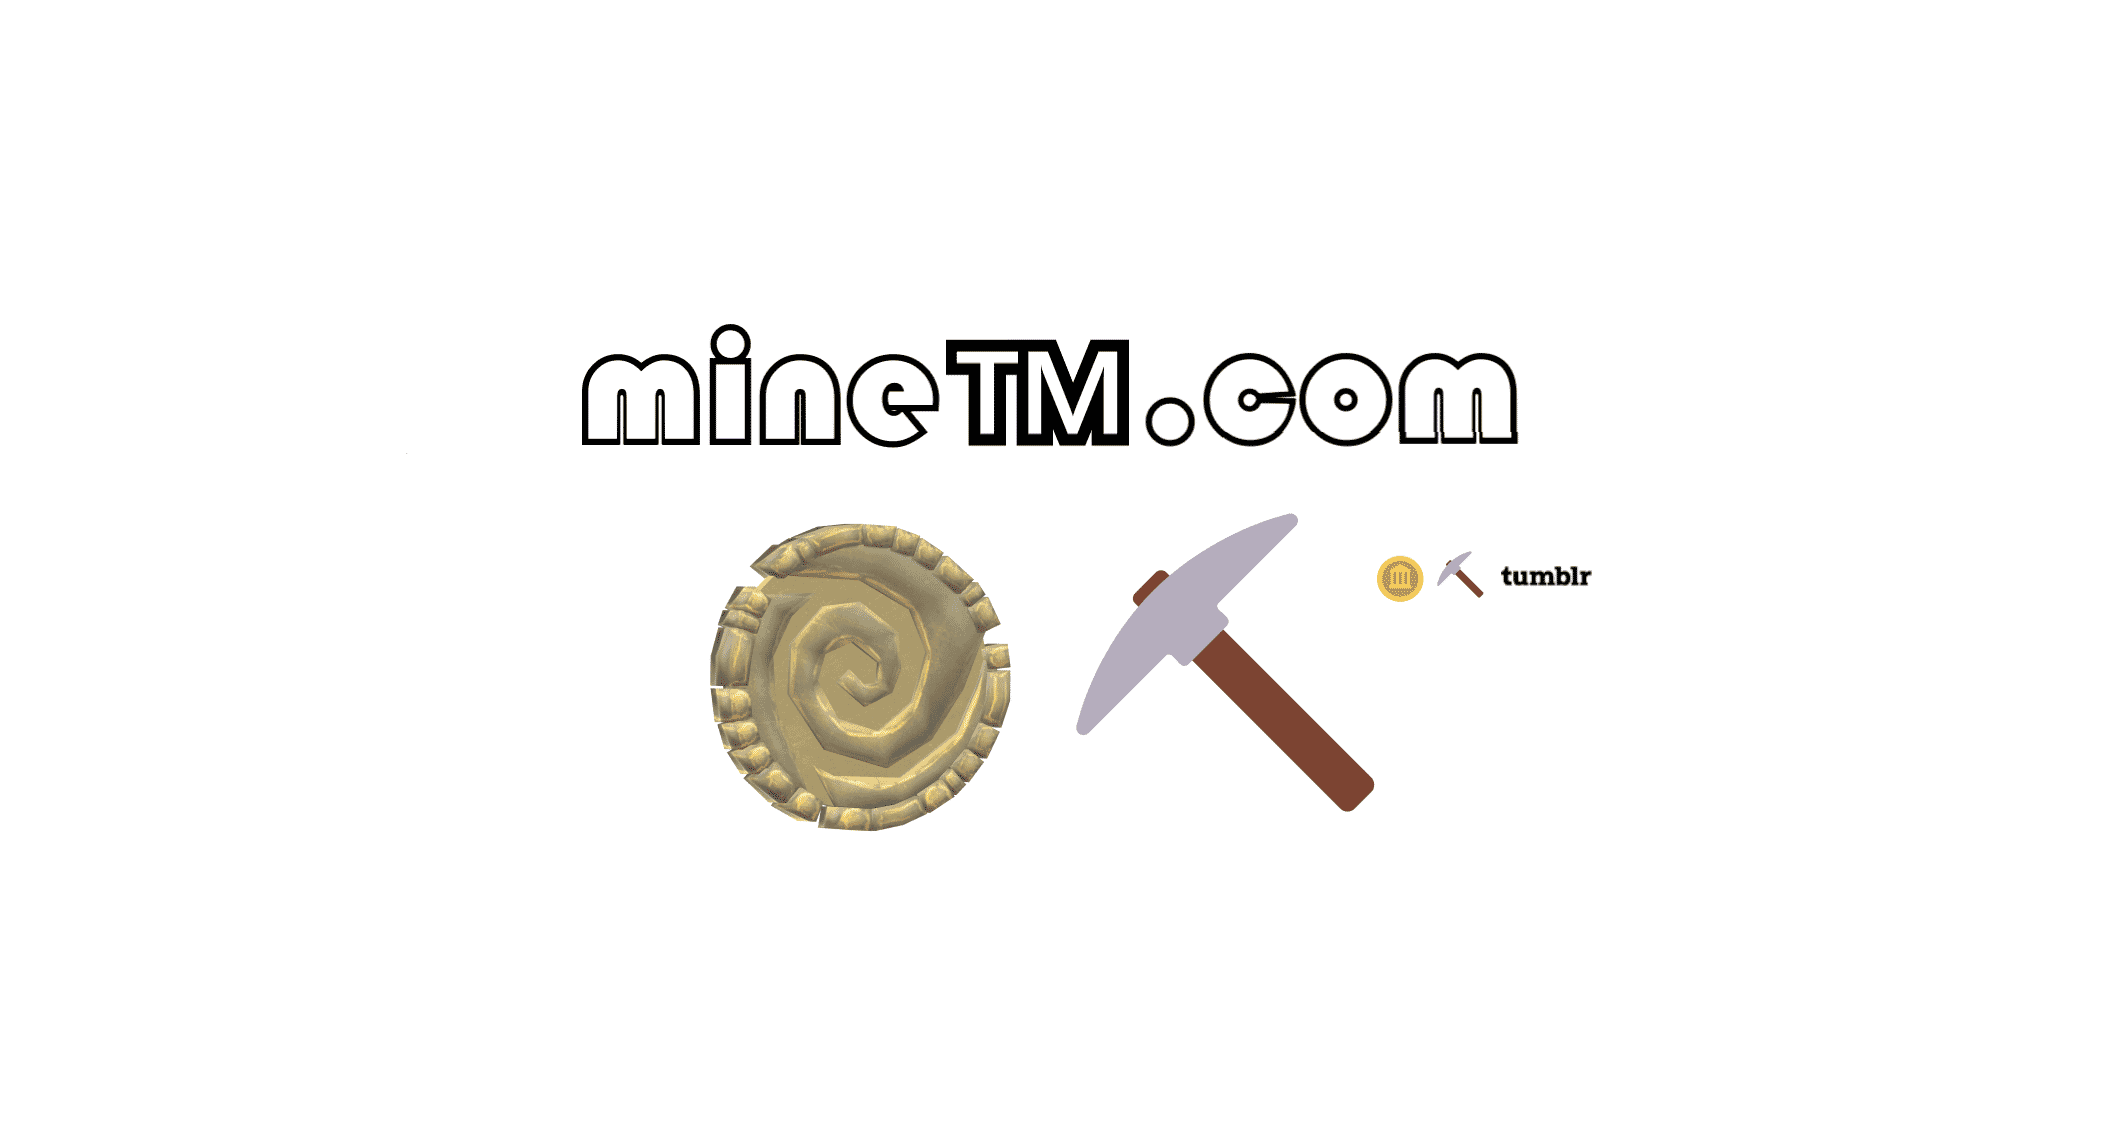 www.MineTM.com Domain Name